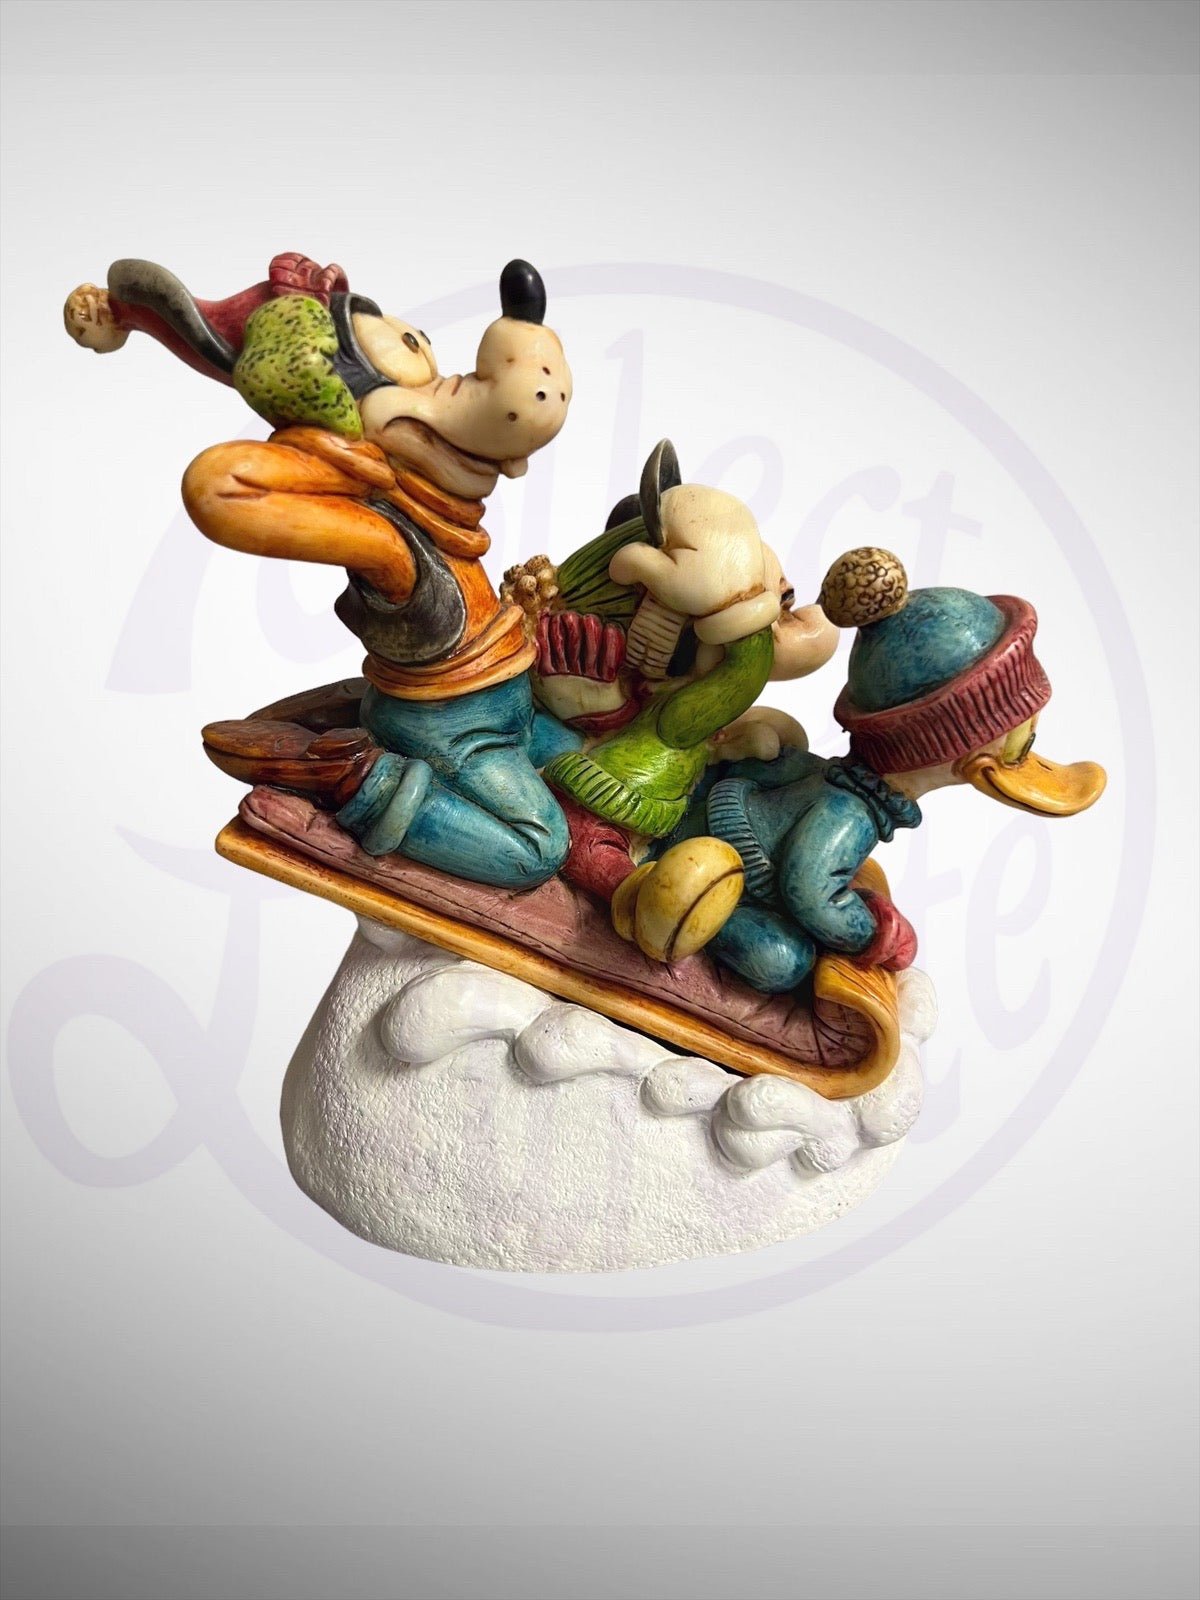 Harmony Kingdom Box - Disney Snow Day With Friends Mickey Donald Goofy Figurine No Box